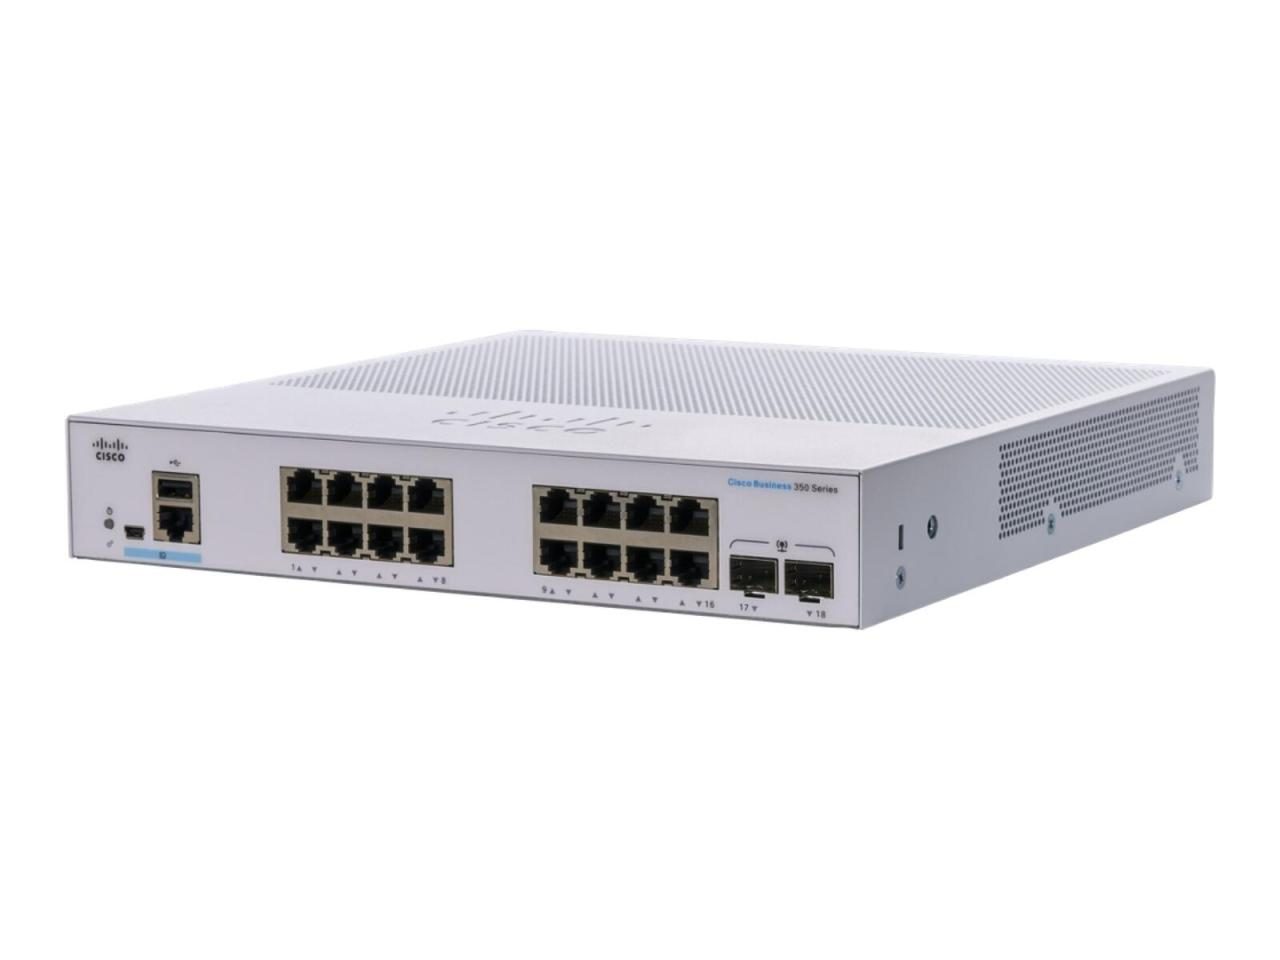 Cisco Switch Business 350-Series 18-Port 1GbE managed von Cisco